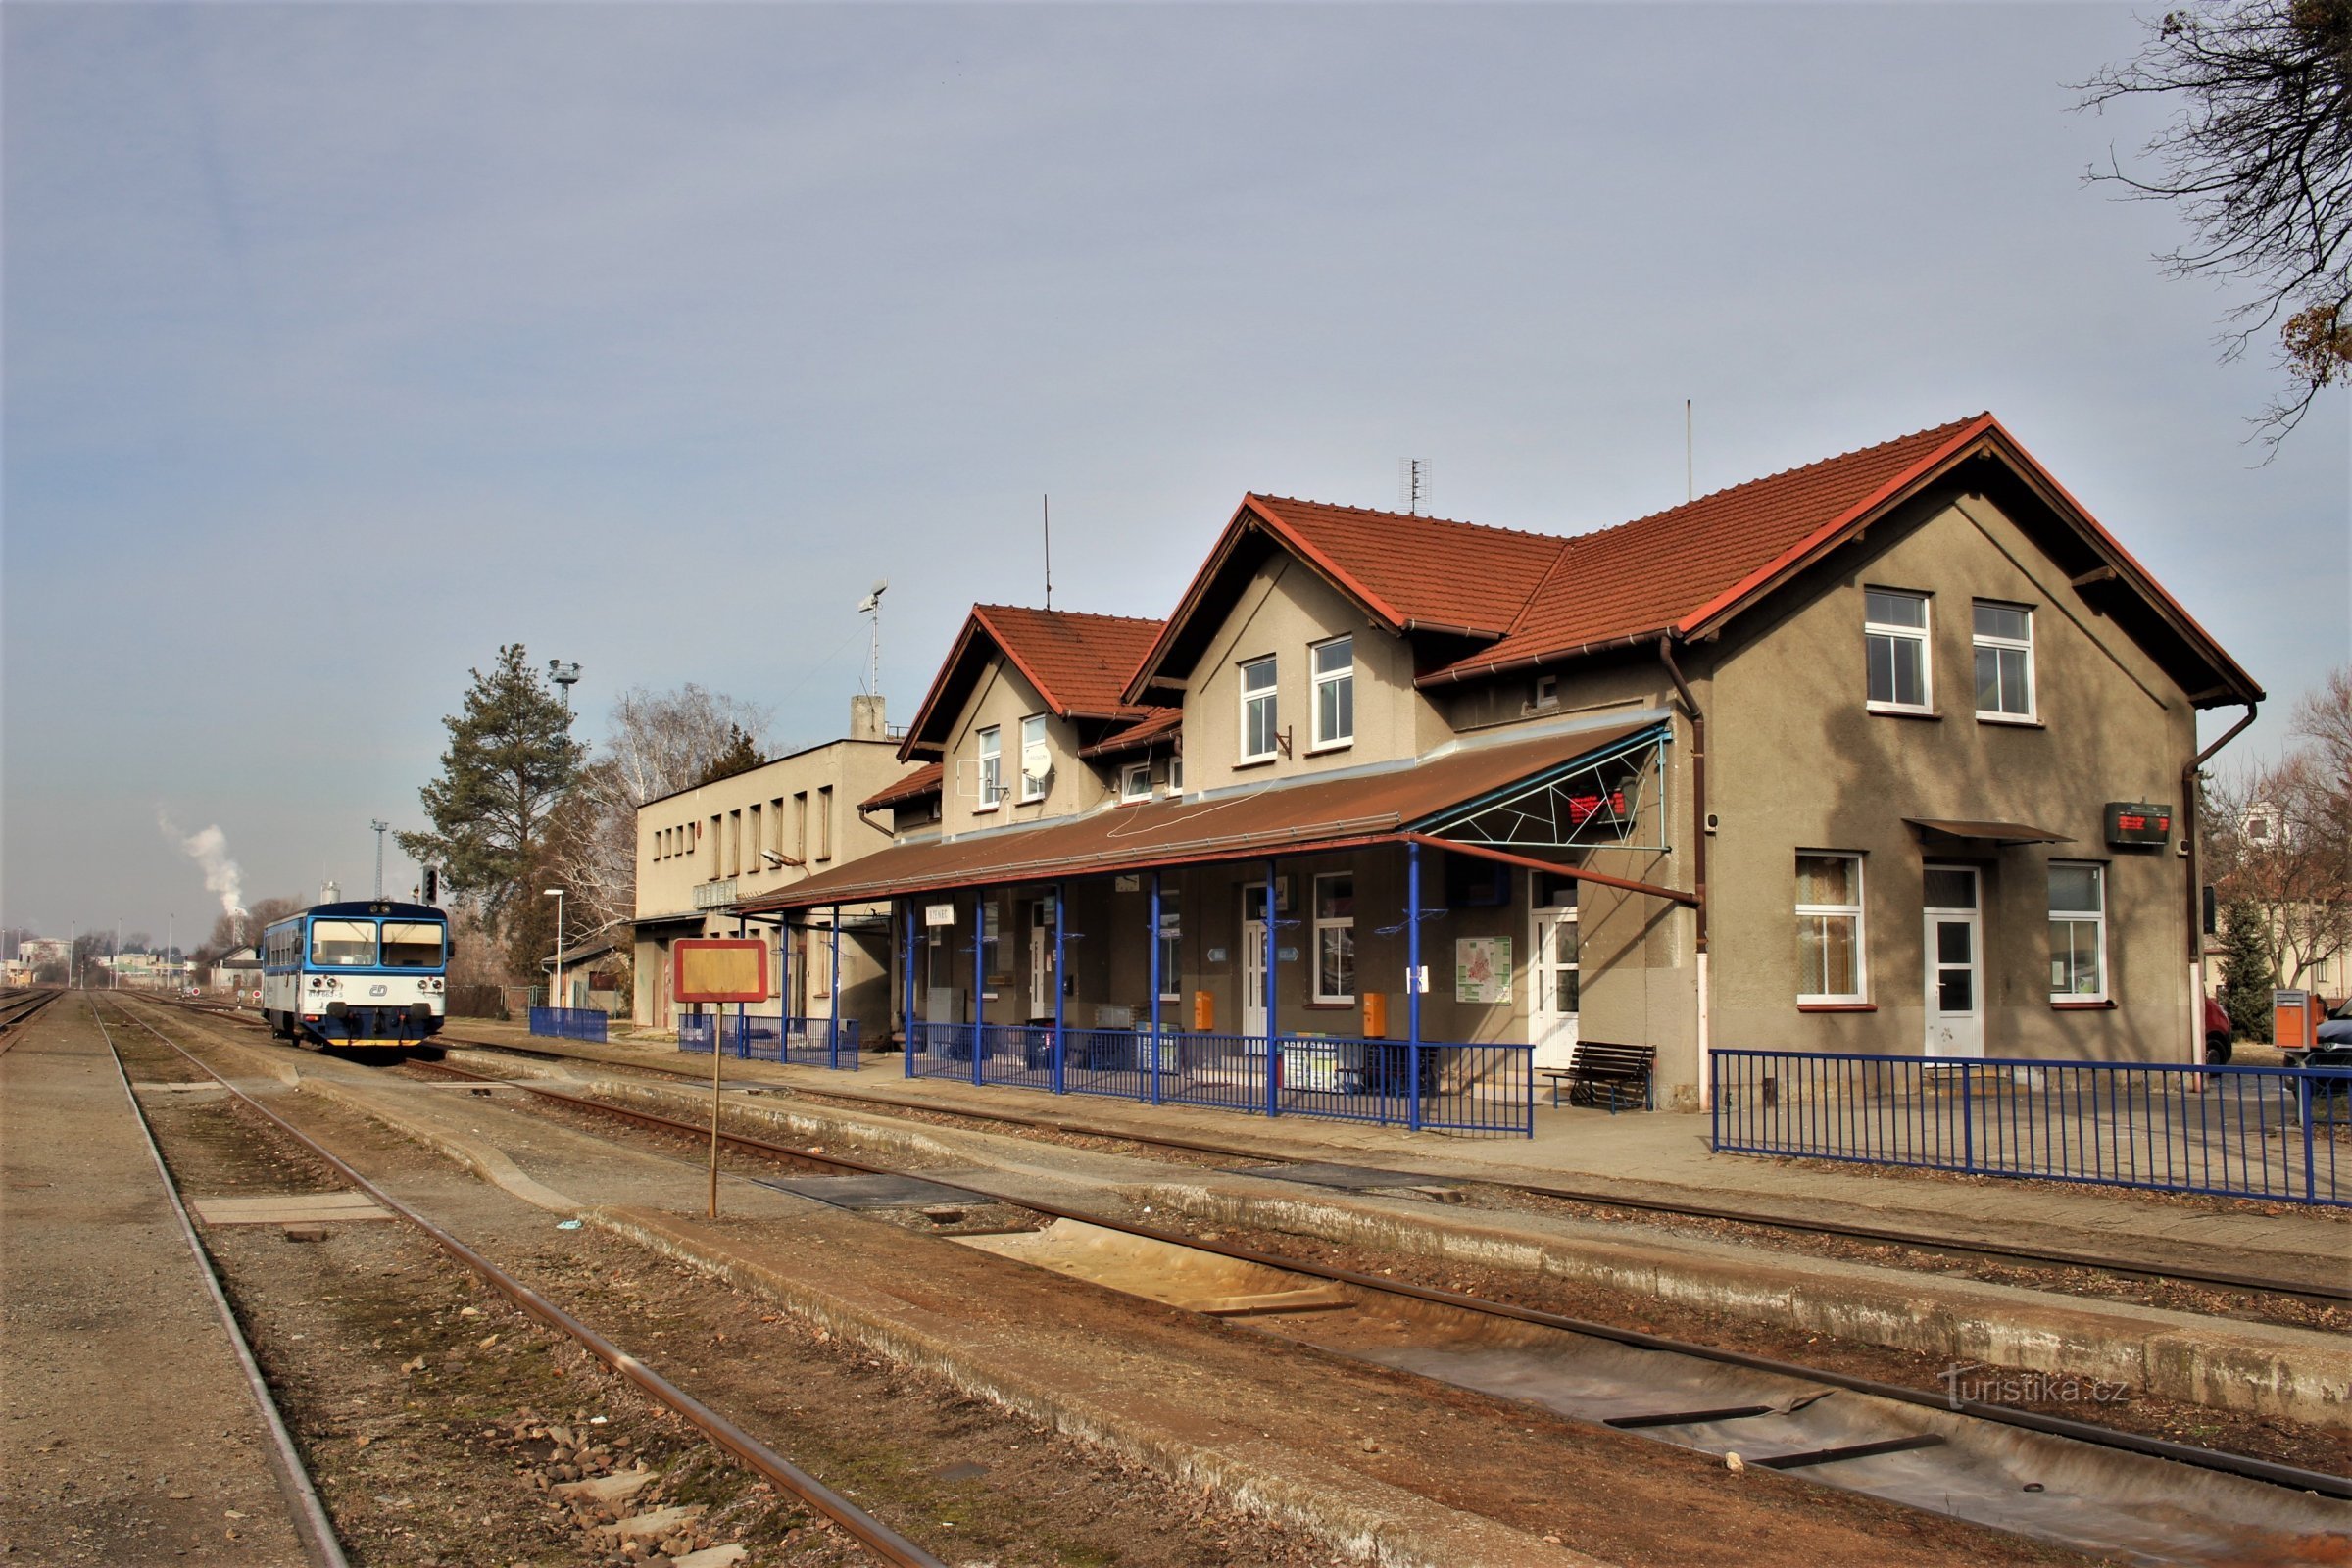 Gare SNCF à Bzenec